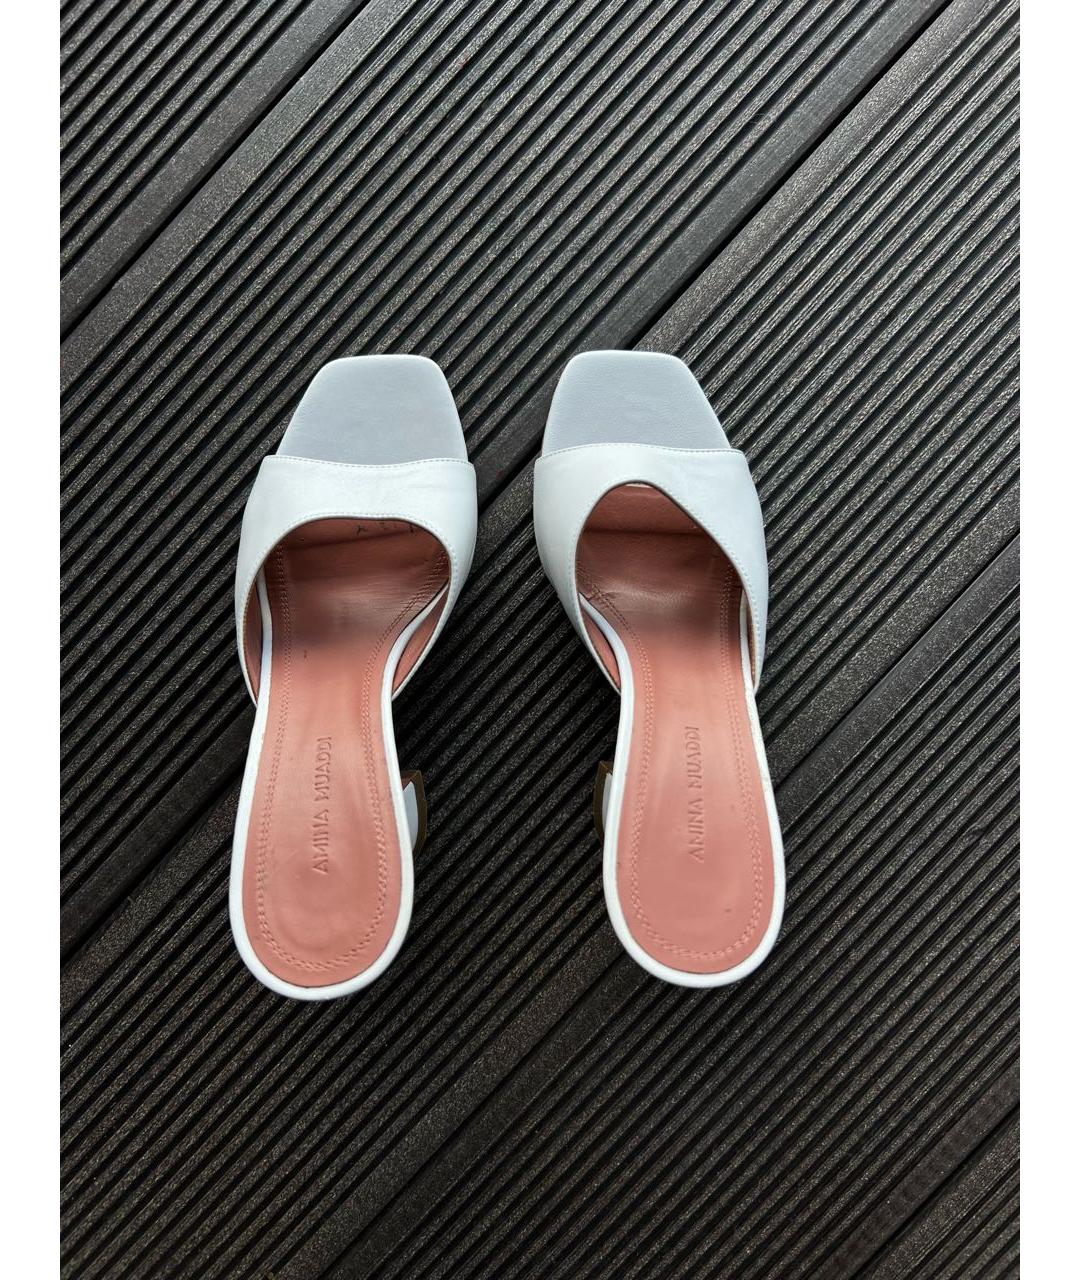 Amina Muaddi Белые кожаные свадебные туфли на среднем каблуке, фото 2